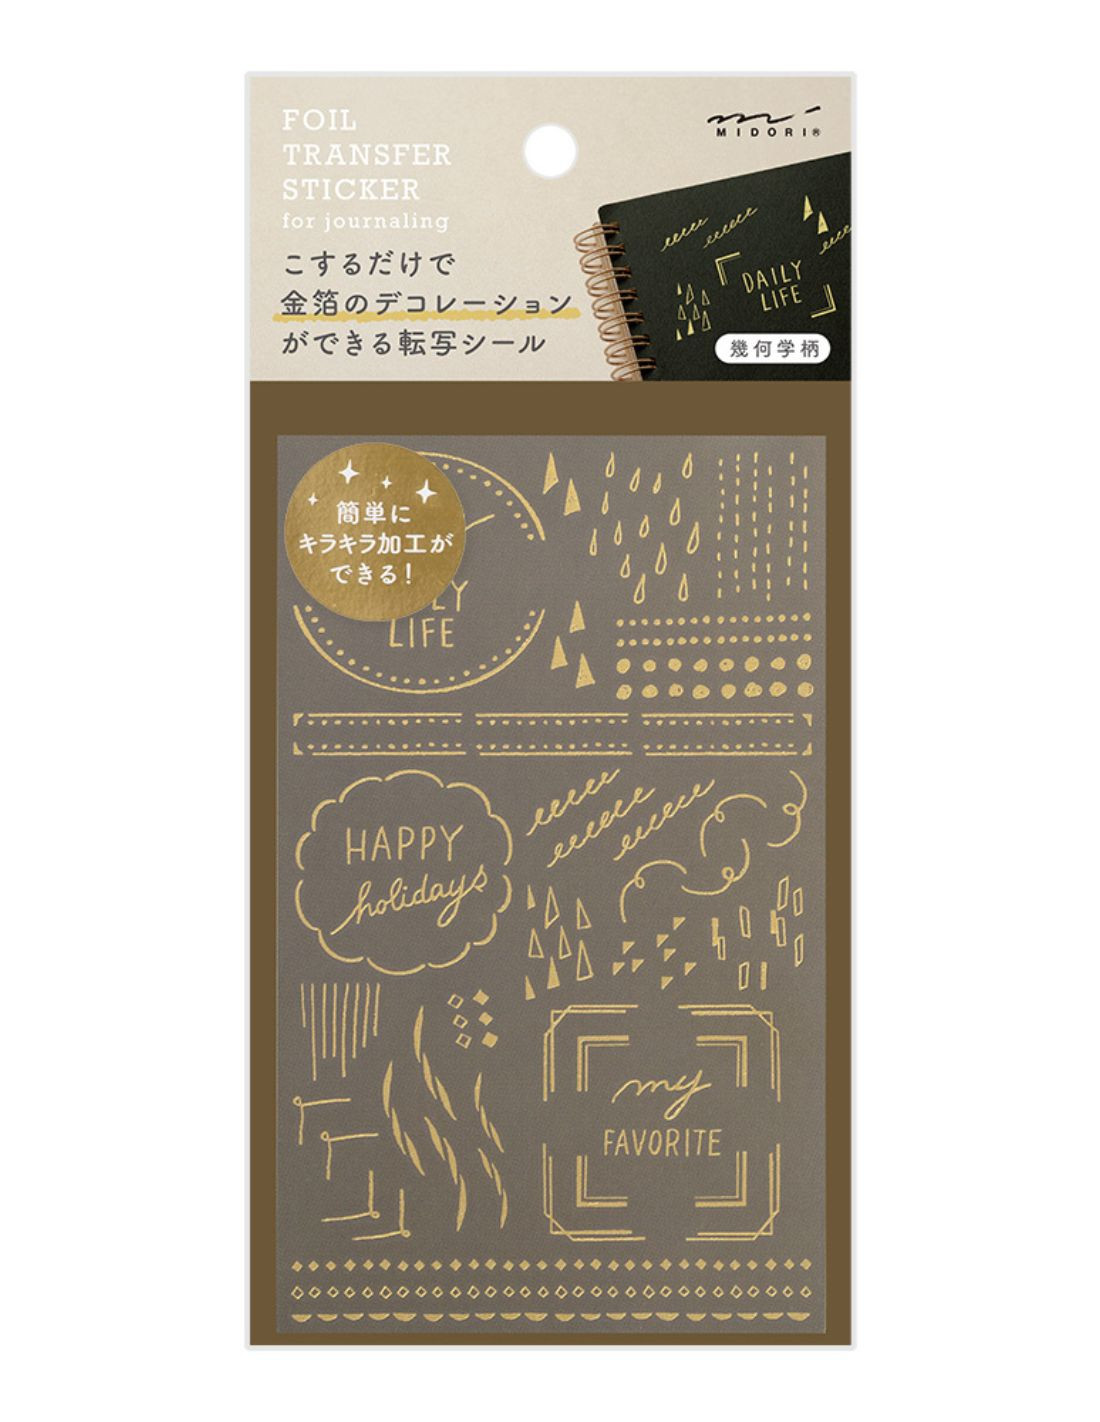 Midori Foil Transfer Stickers - Decorative